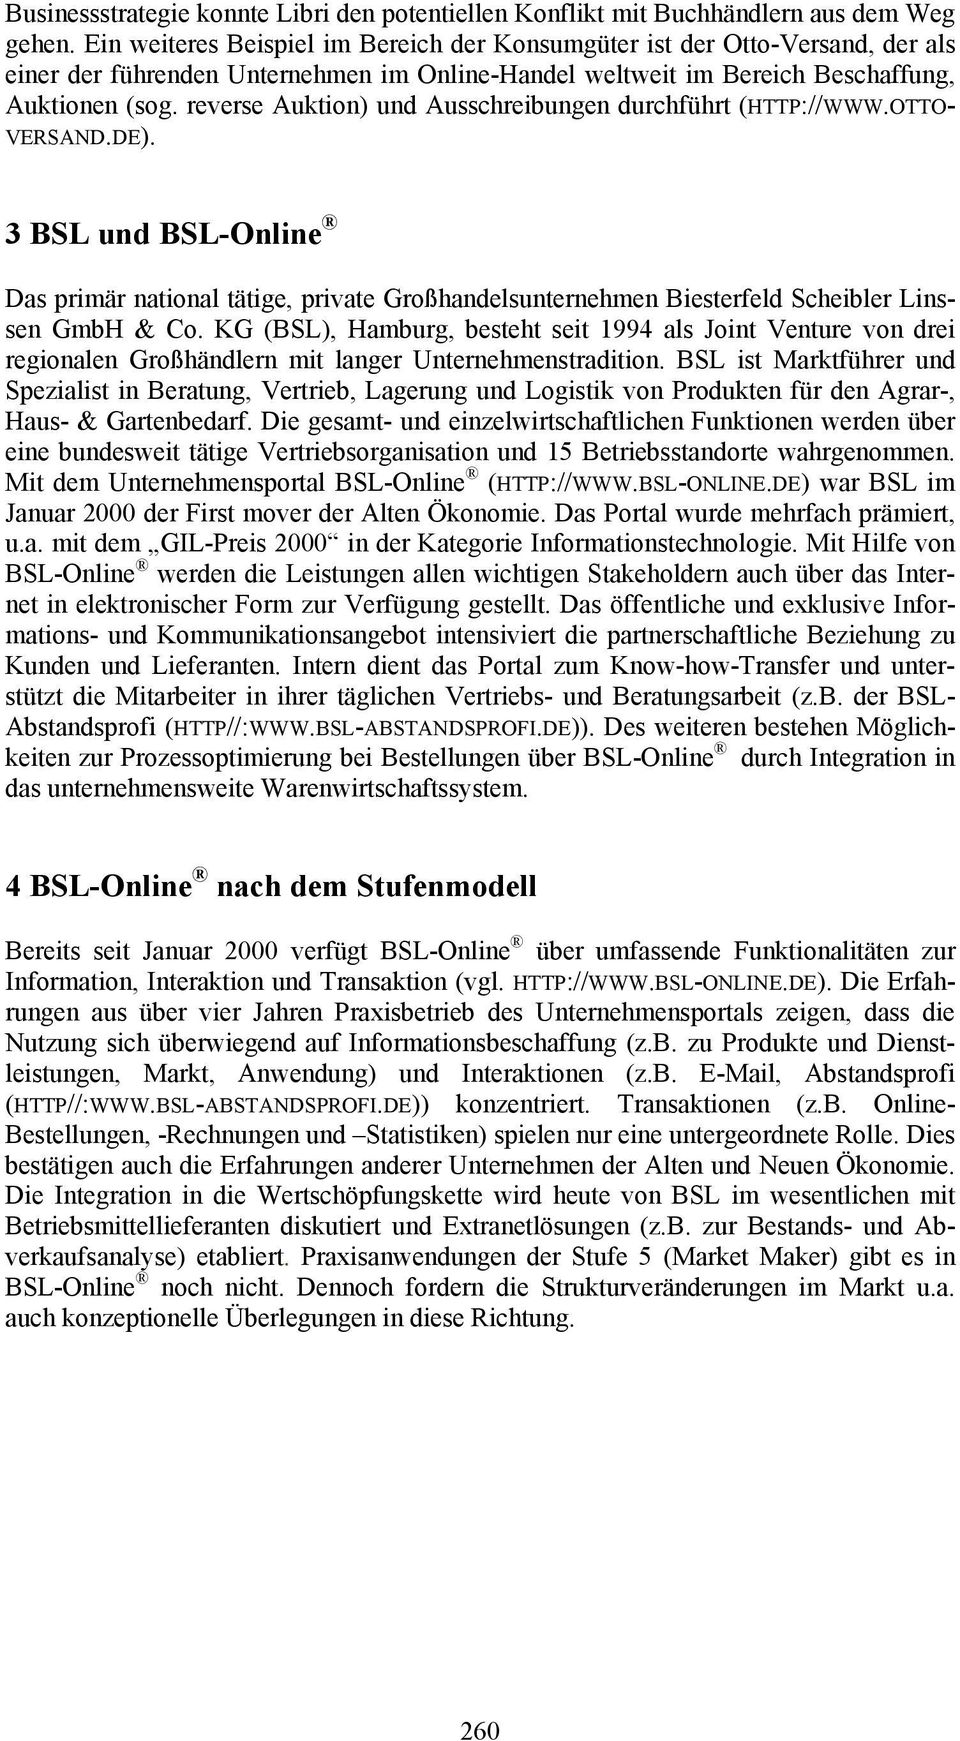 reverse Auktion) und Ausschreibungen durchführt (HTTP://WWW.OTTO- VERSAND.DE). 3 BSL und BSL-Online Das primär national tätige, private Großhandelsunternehmen Biesterfeld Scheibler Linssen GmbH & Co.